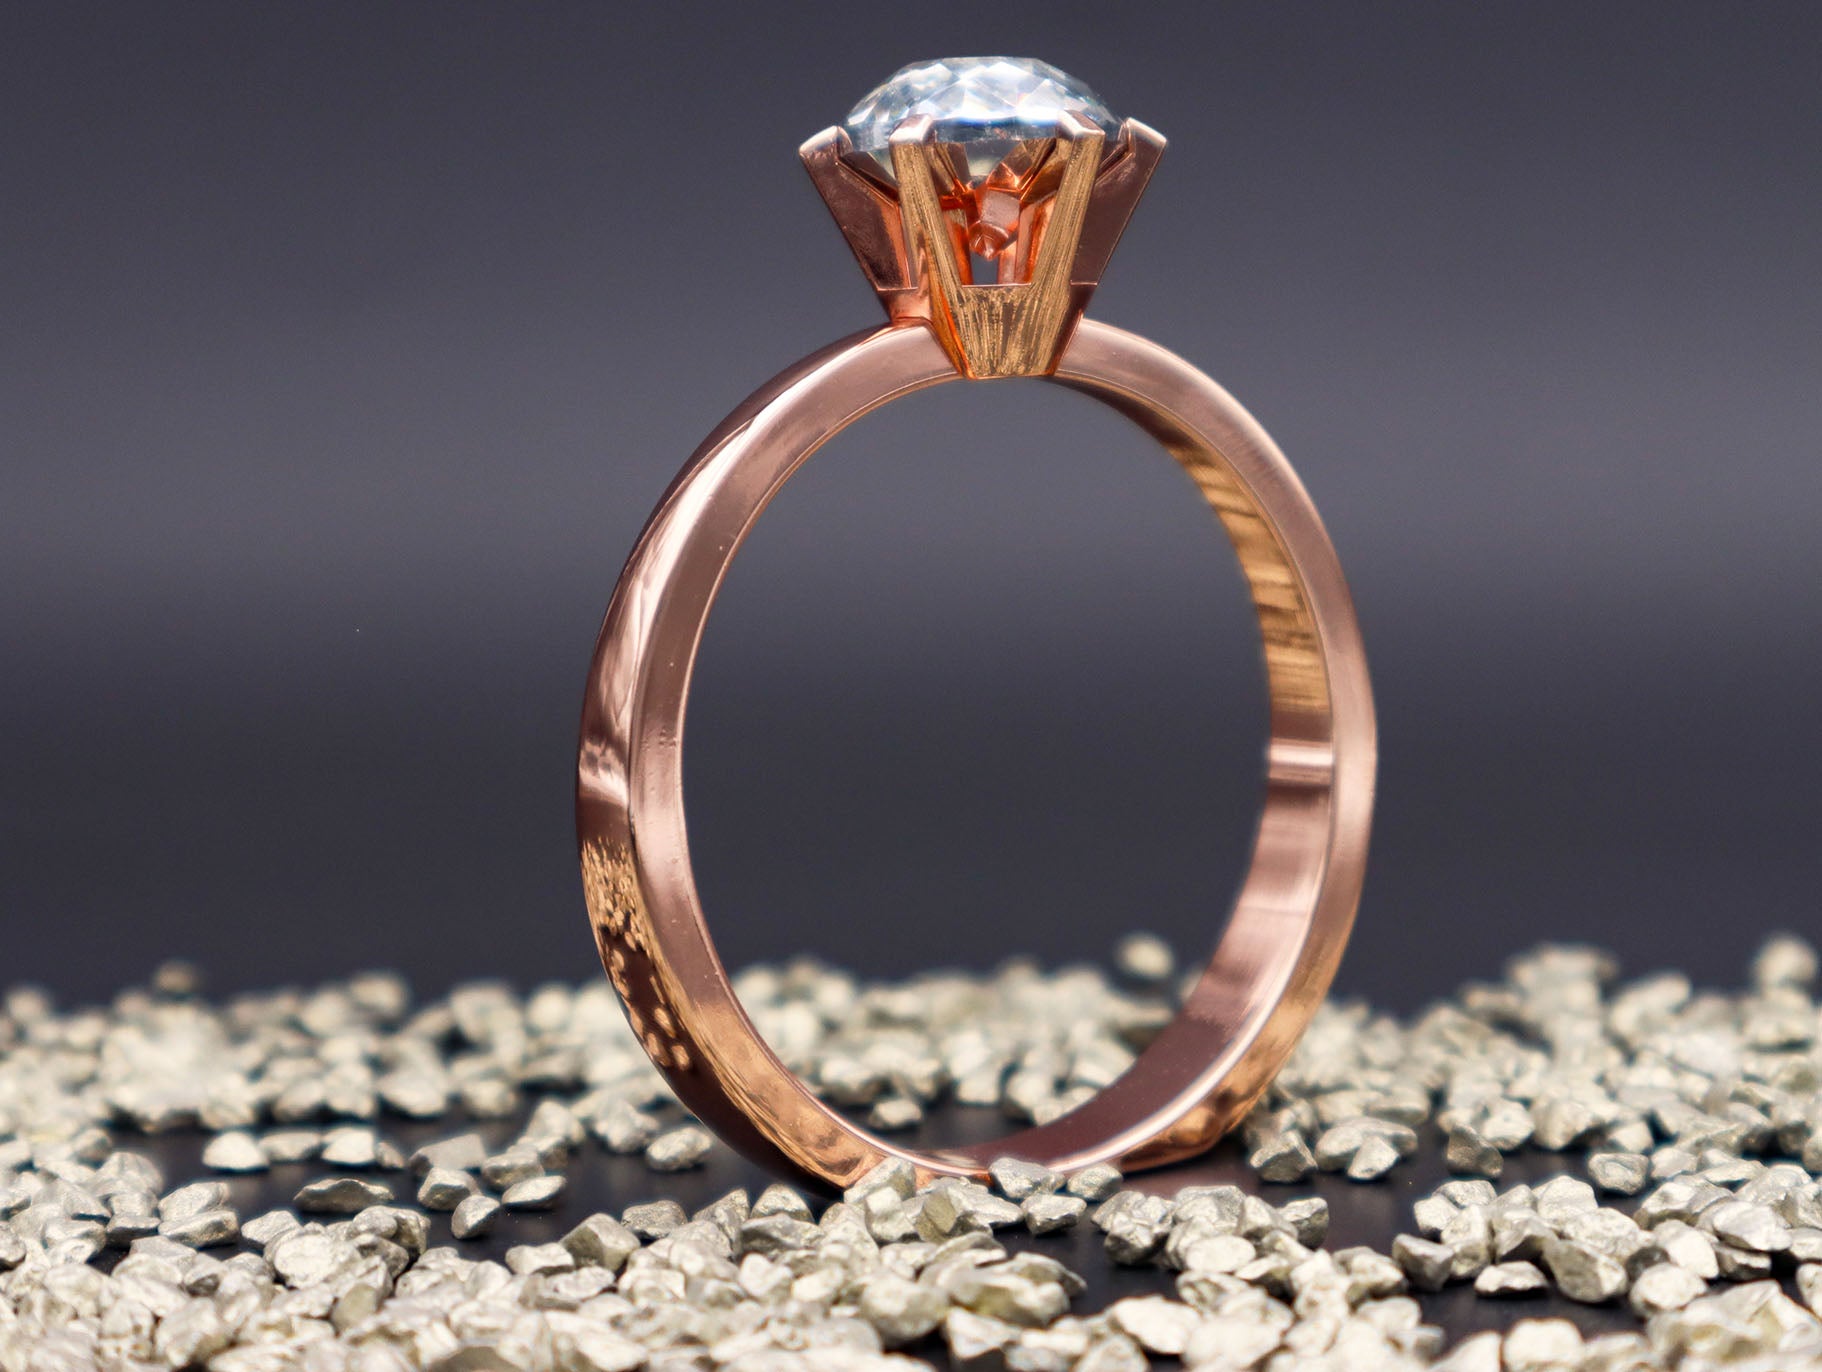 XXL Diamantring mit großem Kristall by SYH in Silber, Gold oder Roségold 8.5 cm